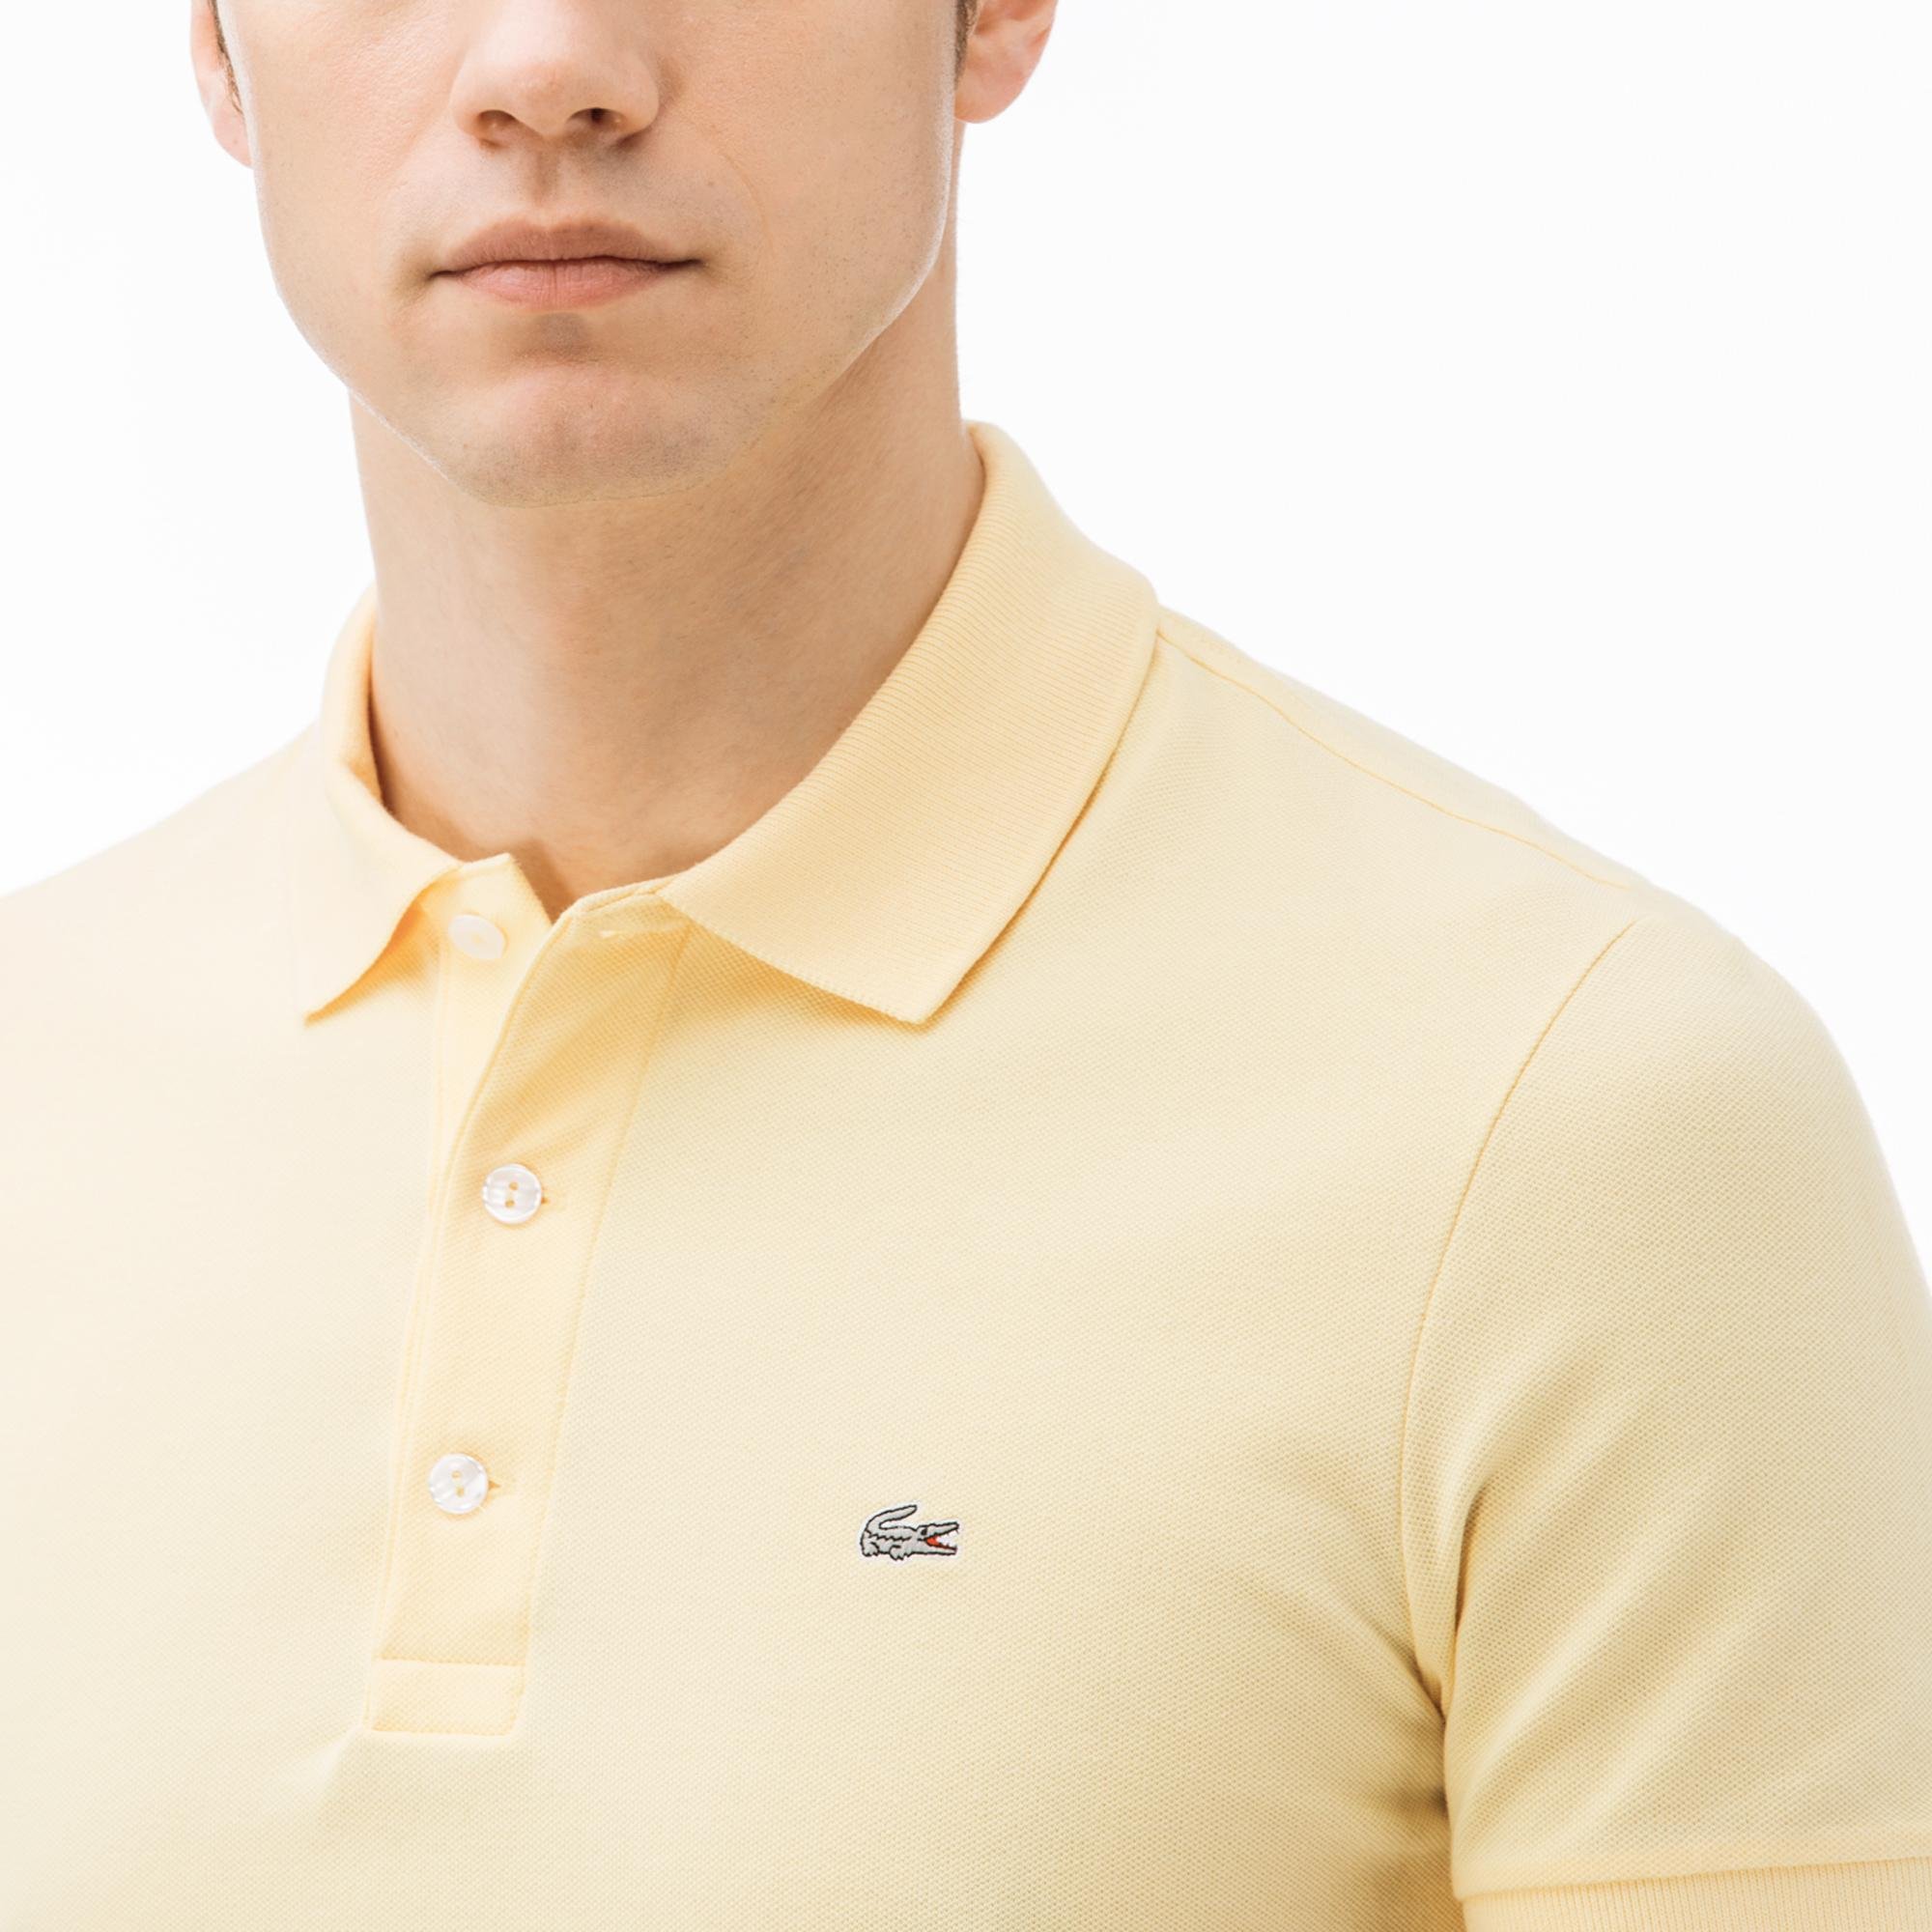 Lacoste Férfi karcsú szabású sztreccs kis piké póló 